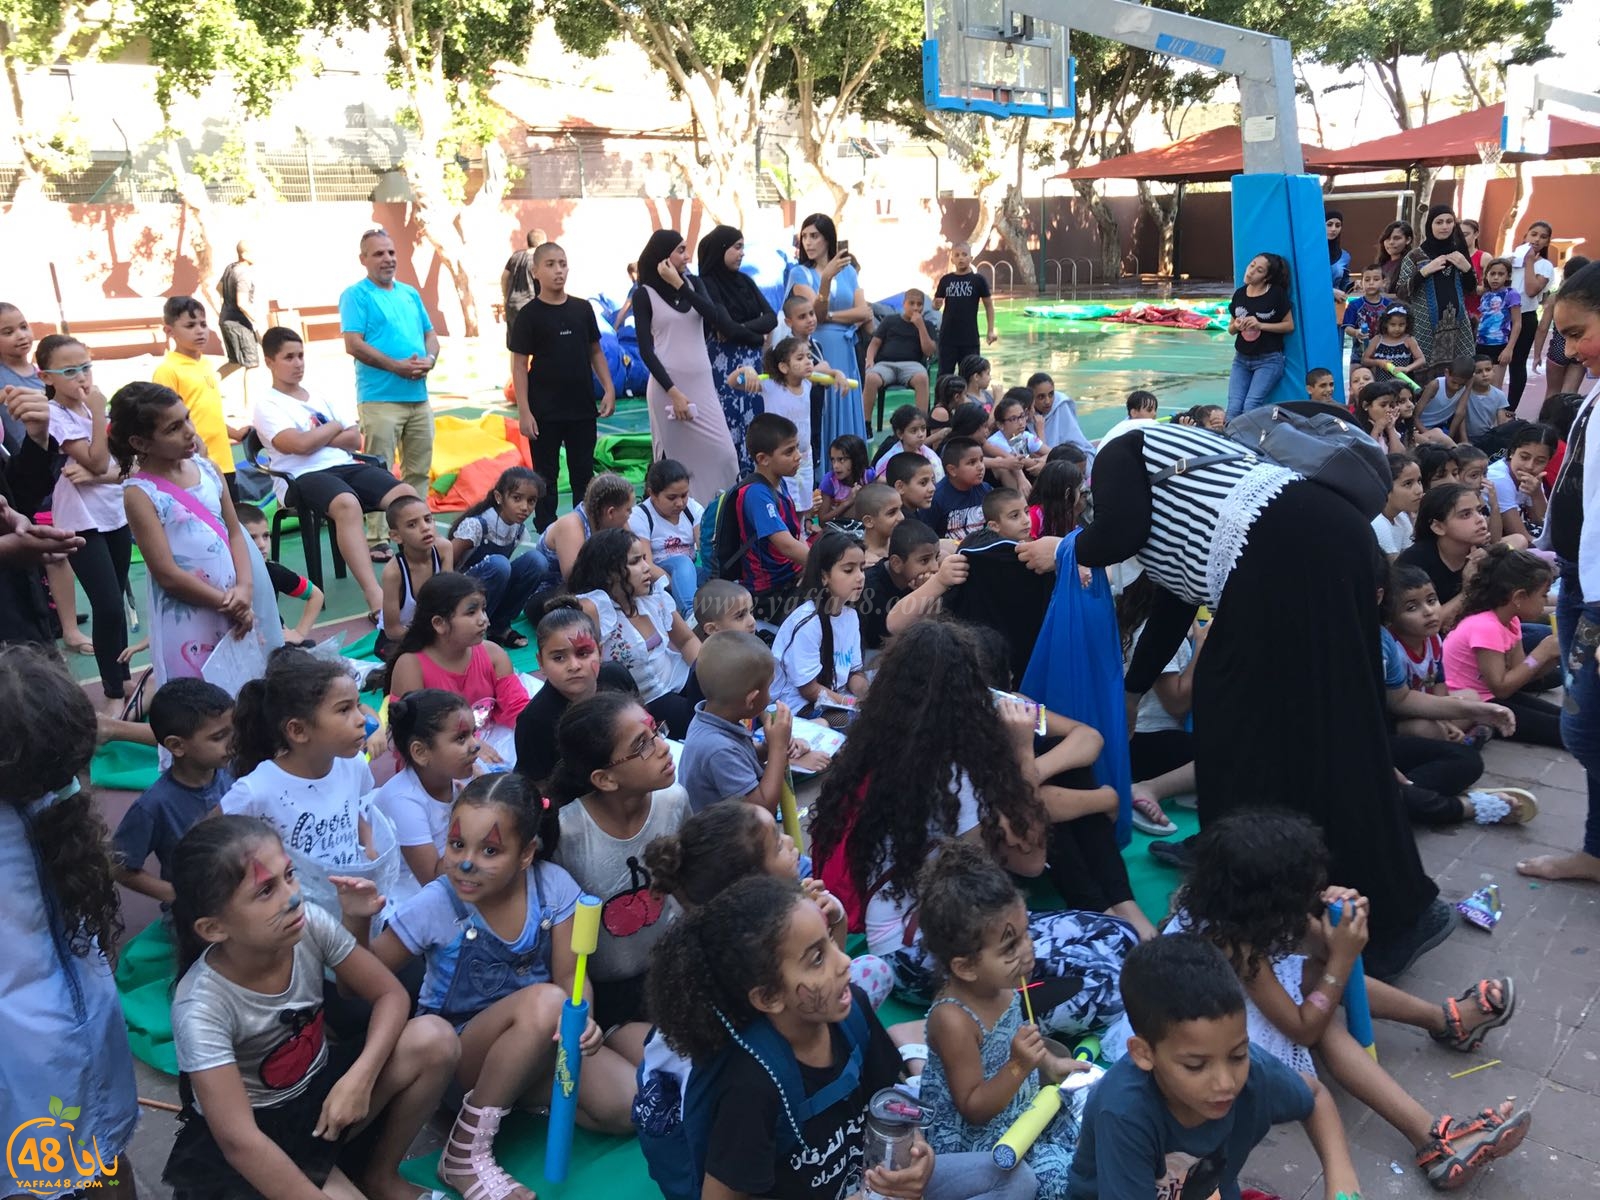  بالصور: مؤسسة الفرقان بيافا تختتم السنة بفعاليات ترفيهية للأطفال 